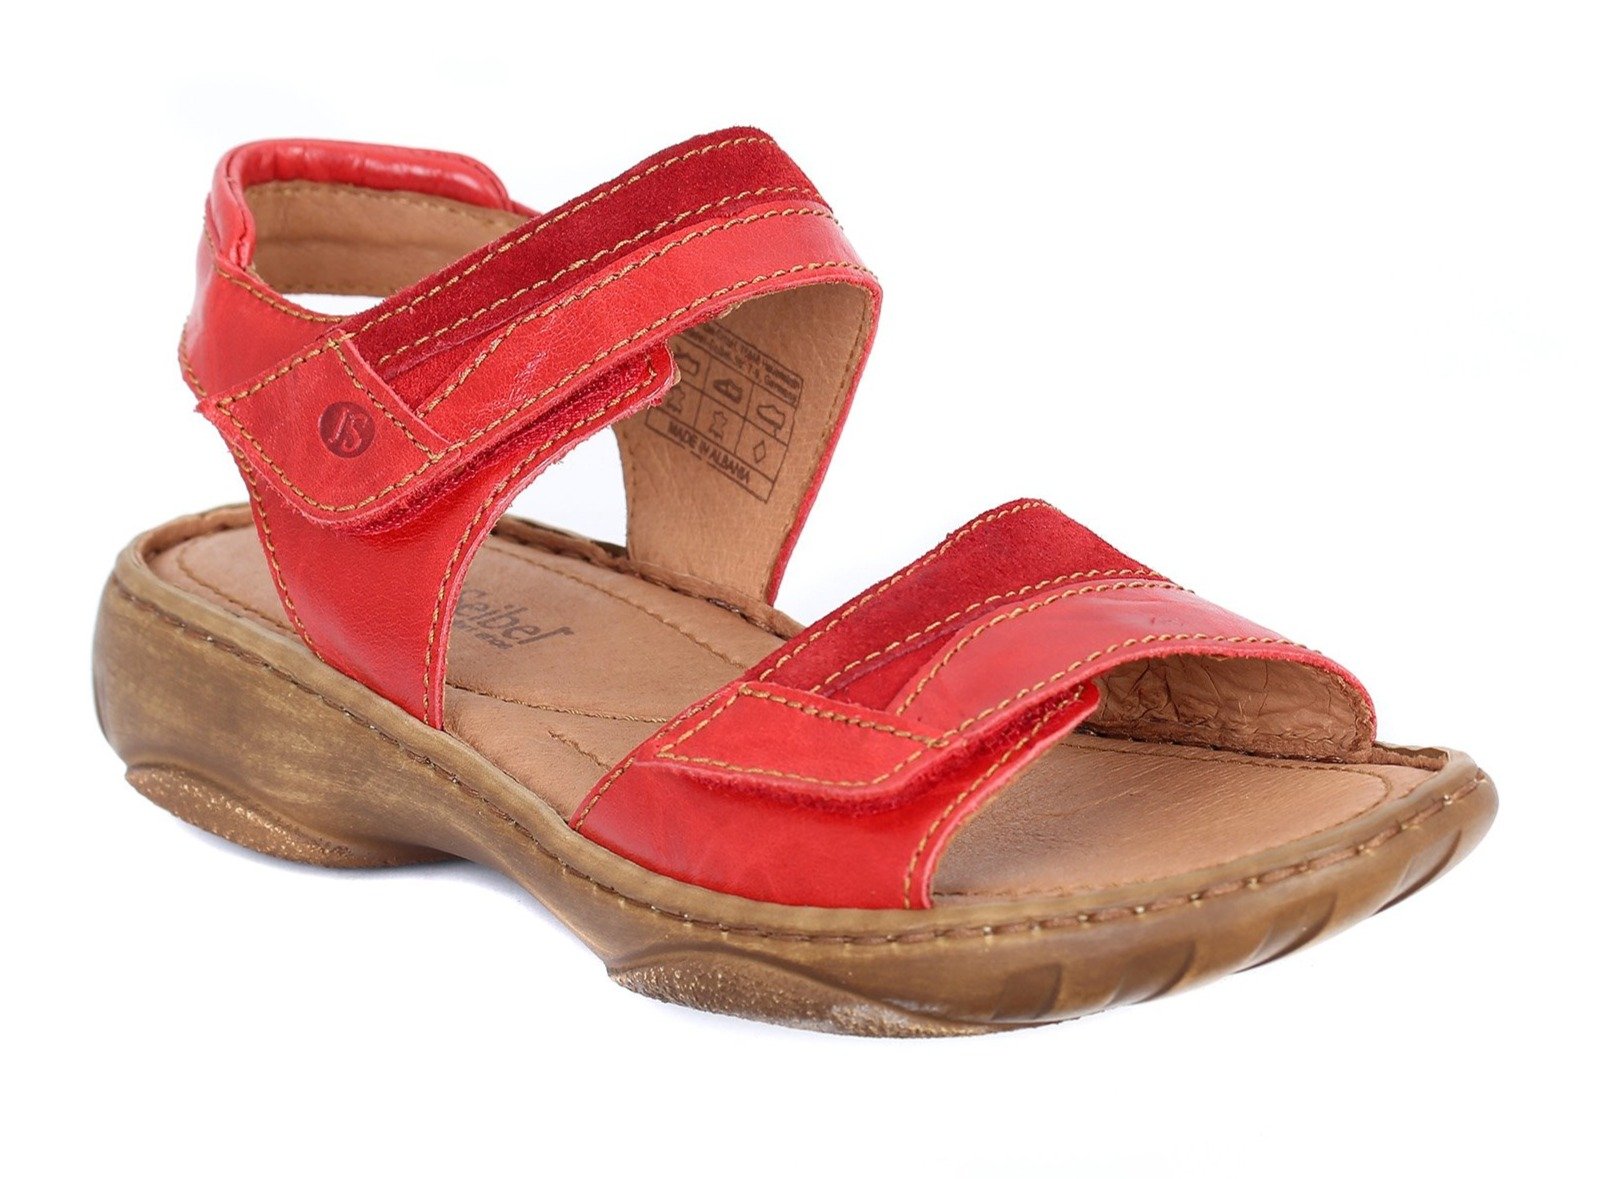 Josef Seibel Women's Debra 19 Sandals